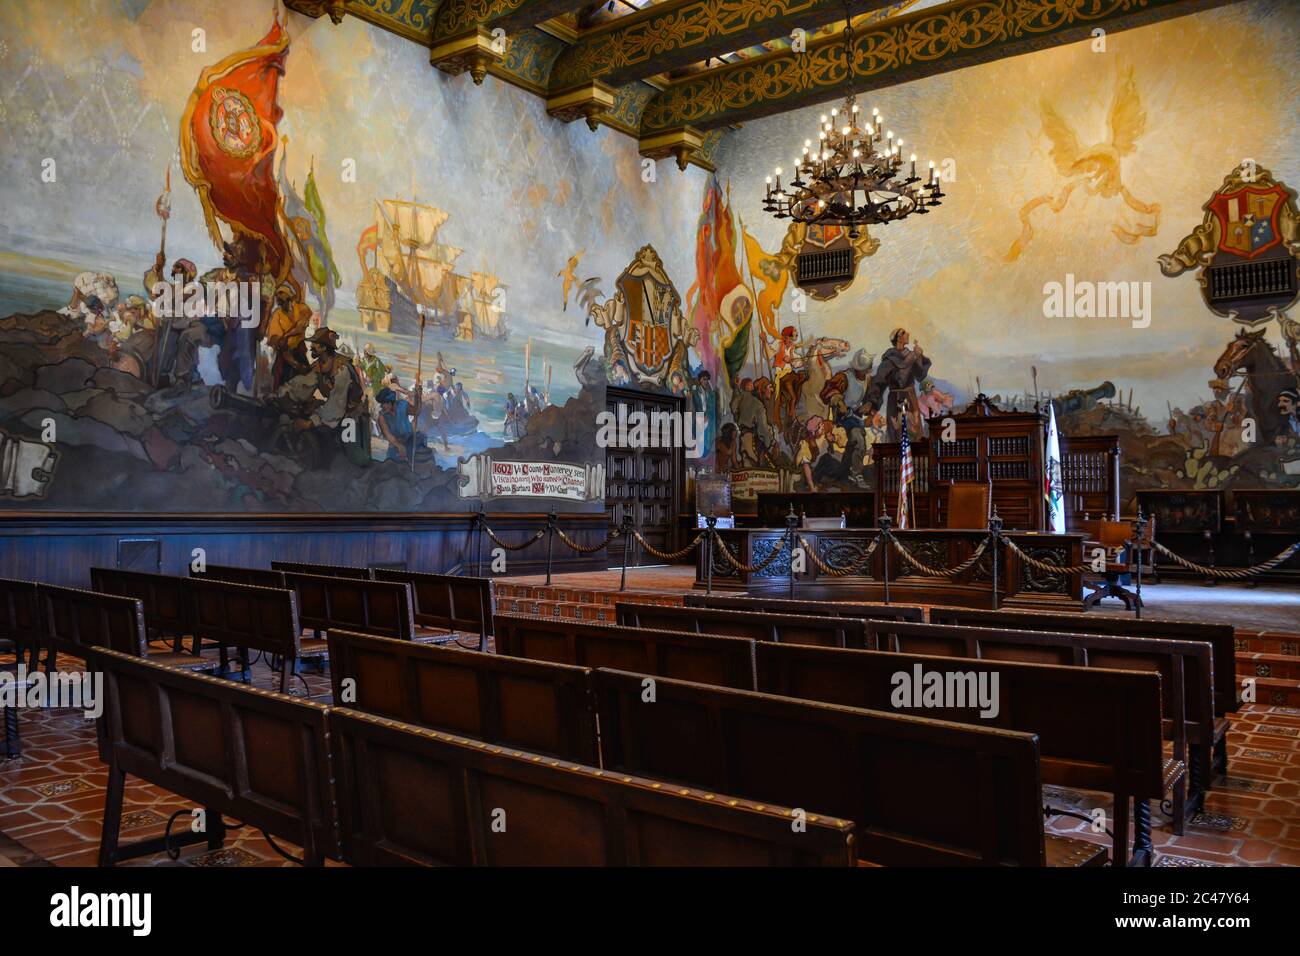 La splendida sala murale raffigura la storia di Santa Barbra al tribunale della contea di Santa Barbara a Santa Barbara, California, USA Foto Stock